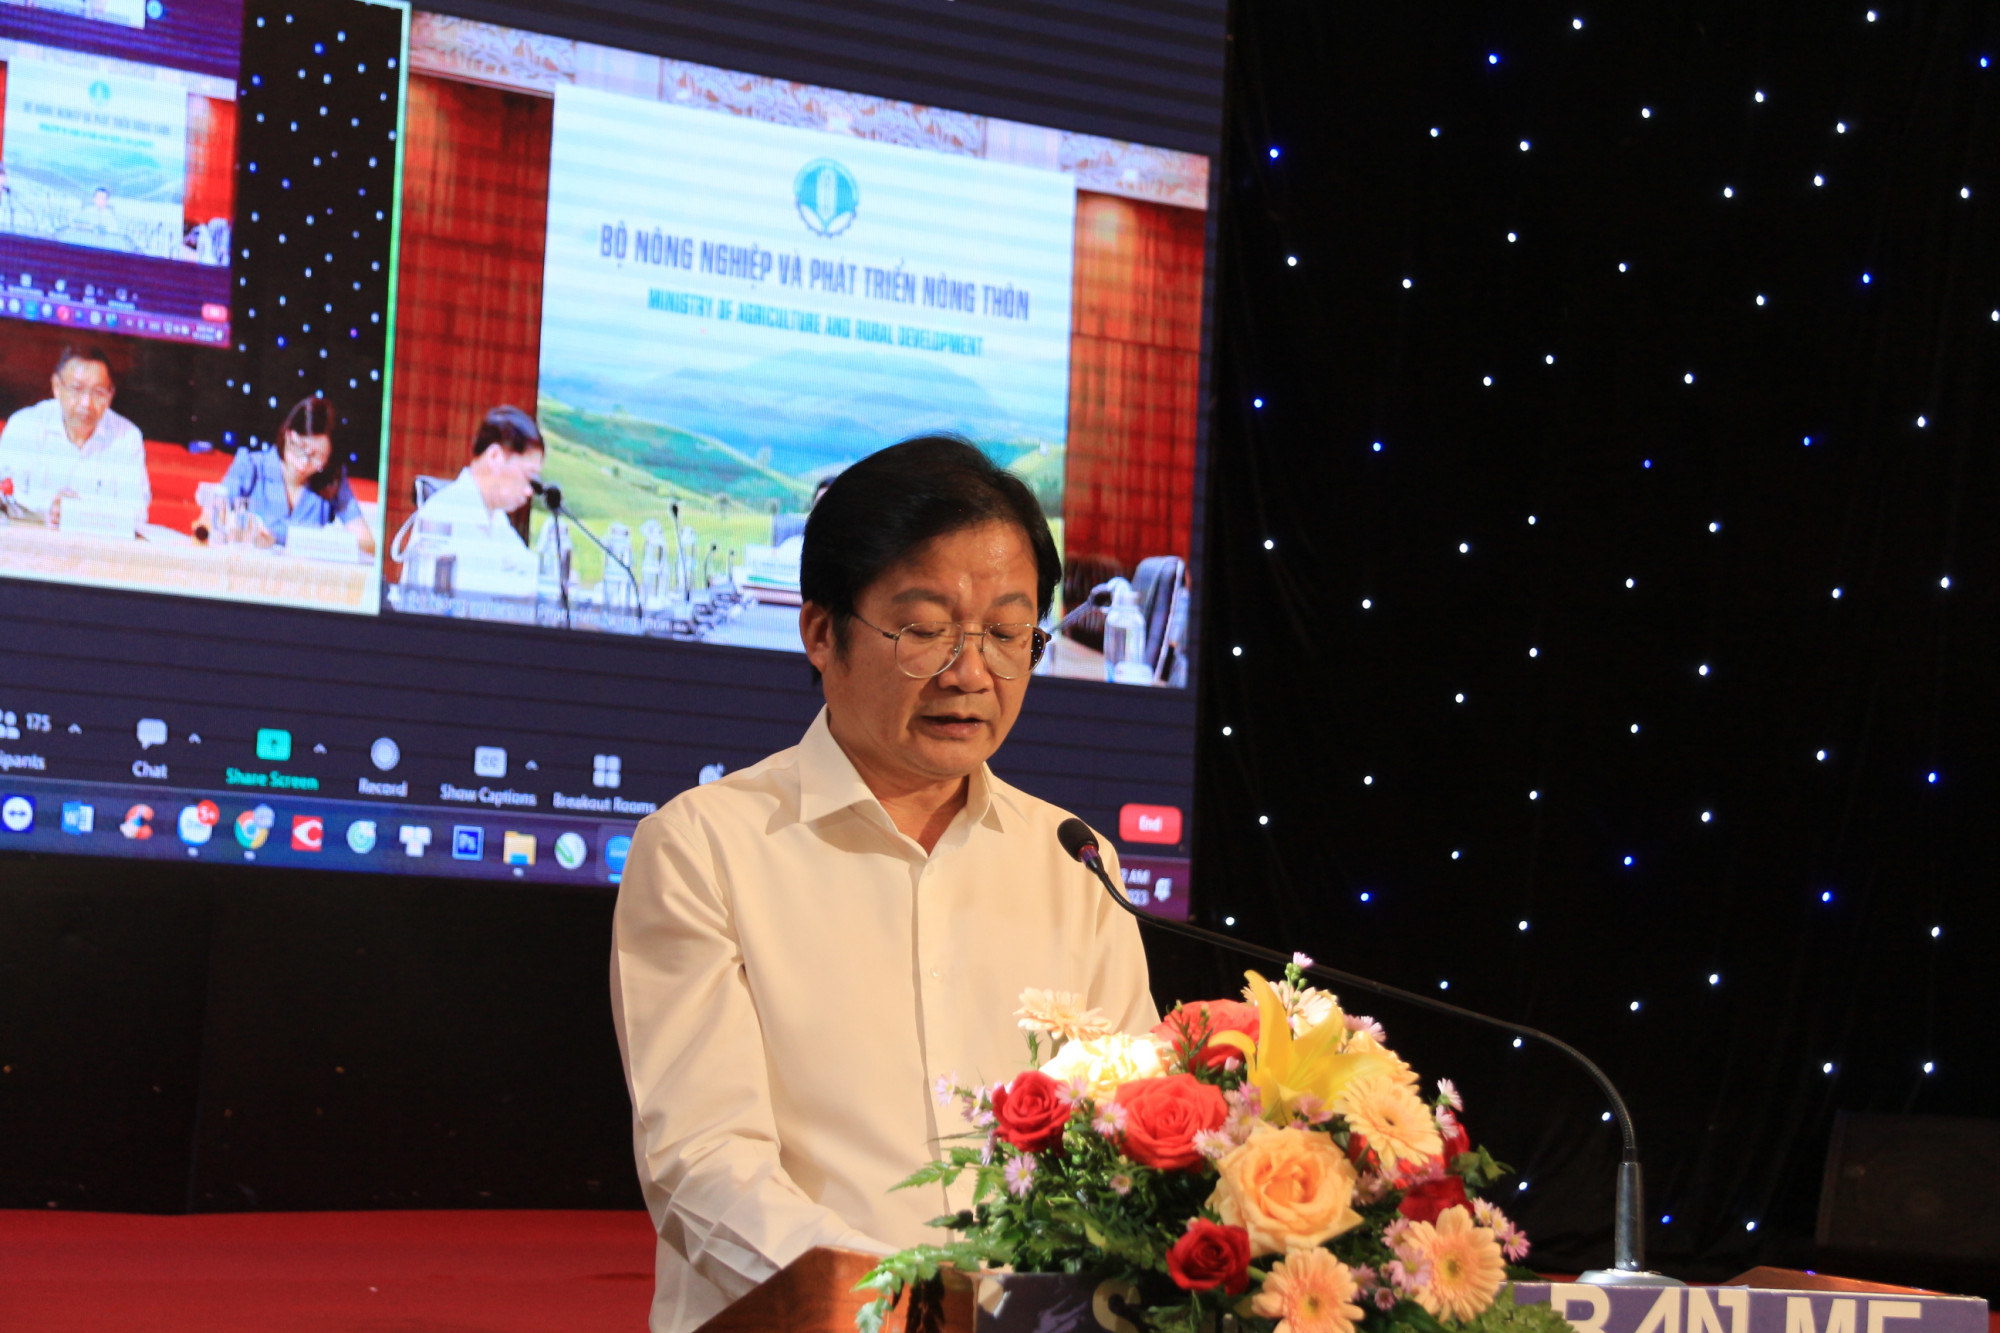 Ông Nguyễn Hoài Dương - Giám đốc Sở NN&PTNT tỉnh Đắk Lắk phát biểu tại buổi diễn đàn